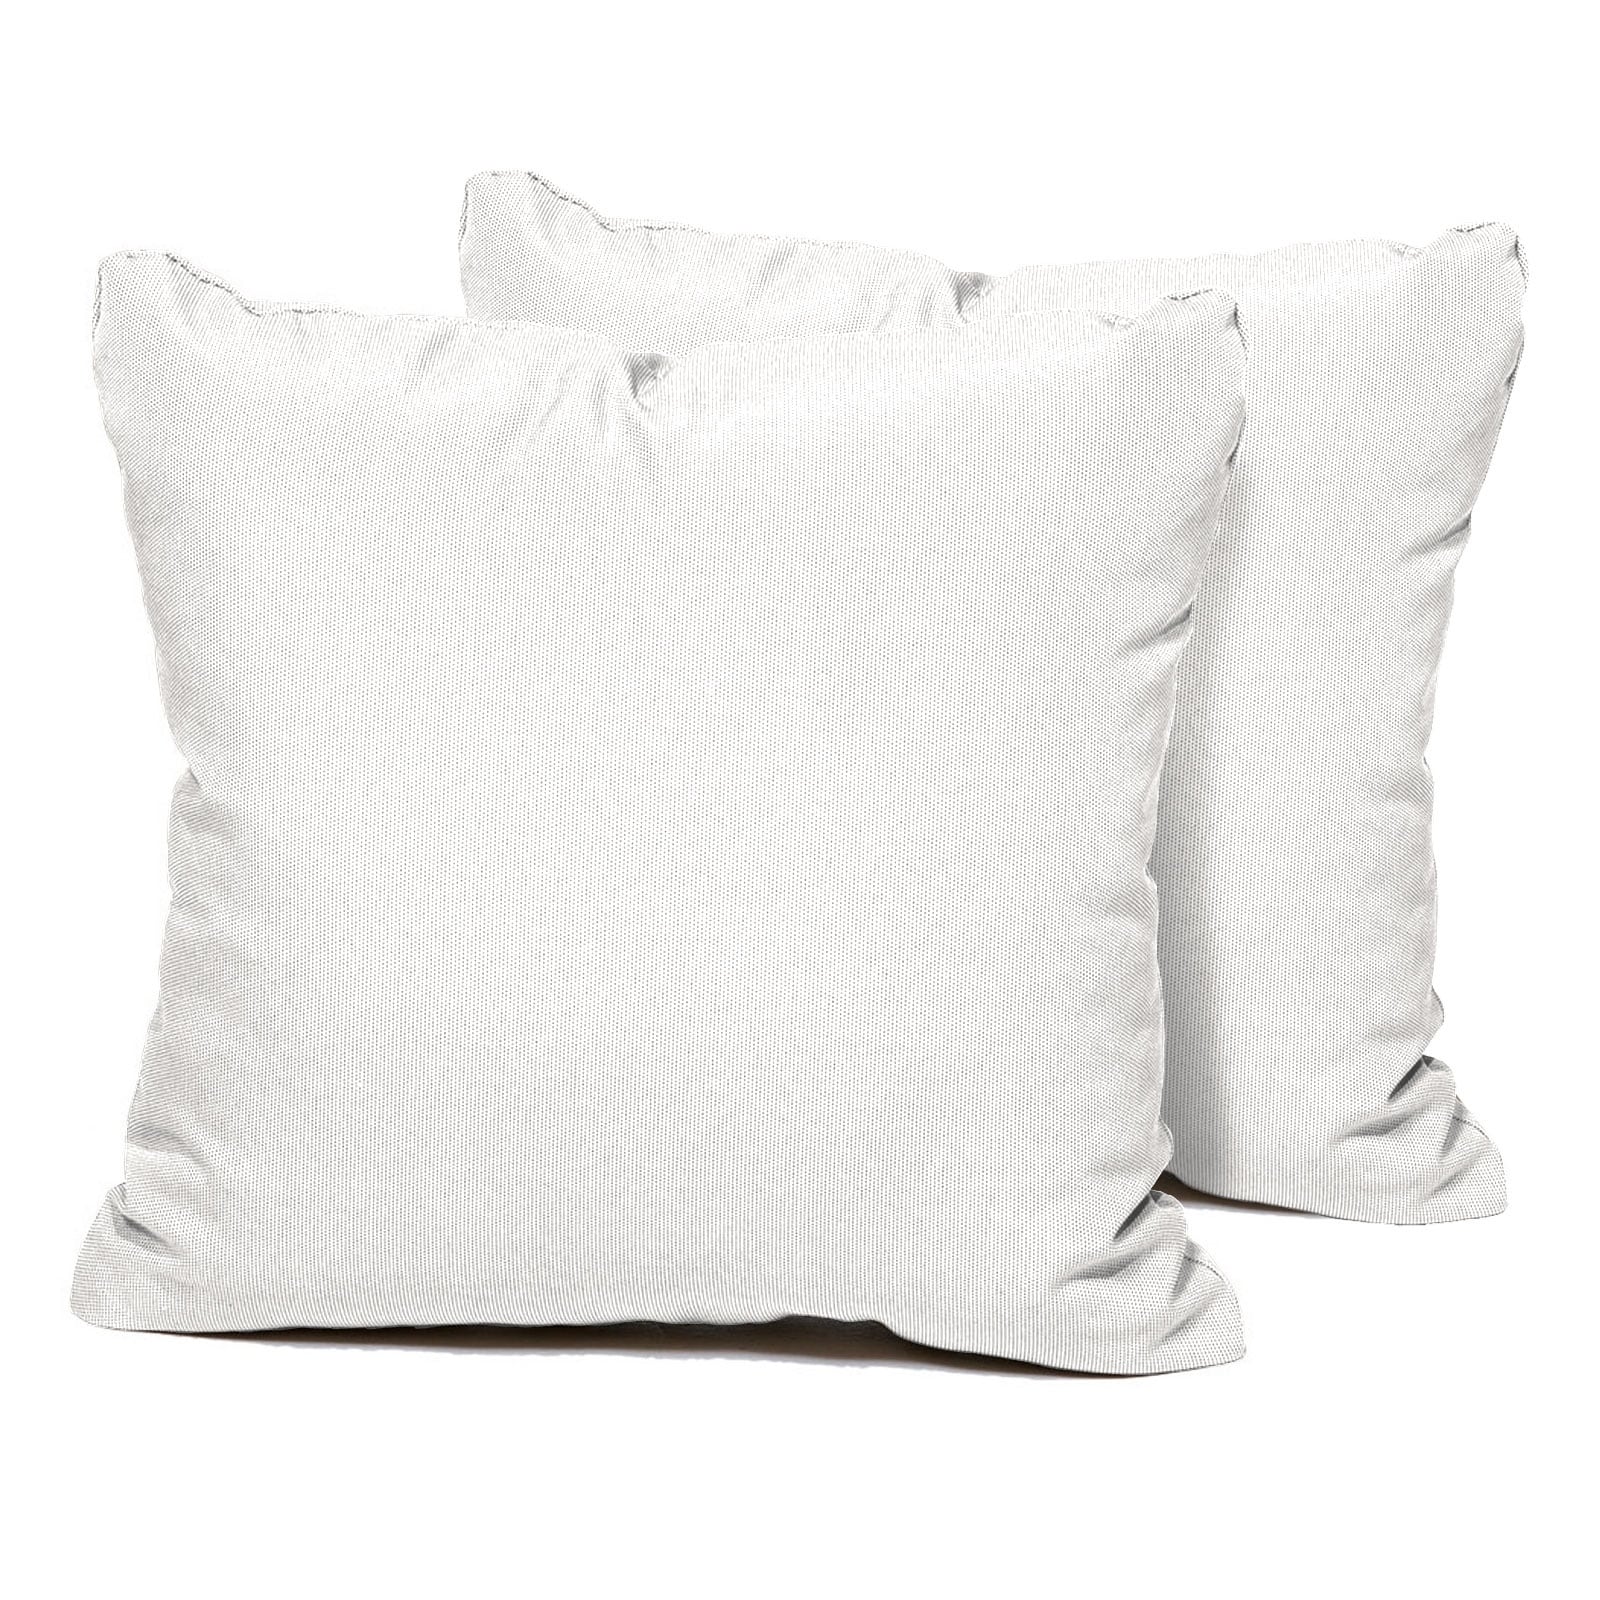 Sail White Outdoor Throw Pillows Square Set of 2